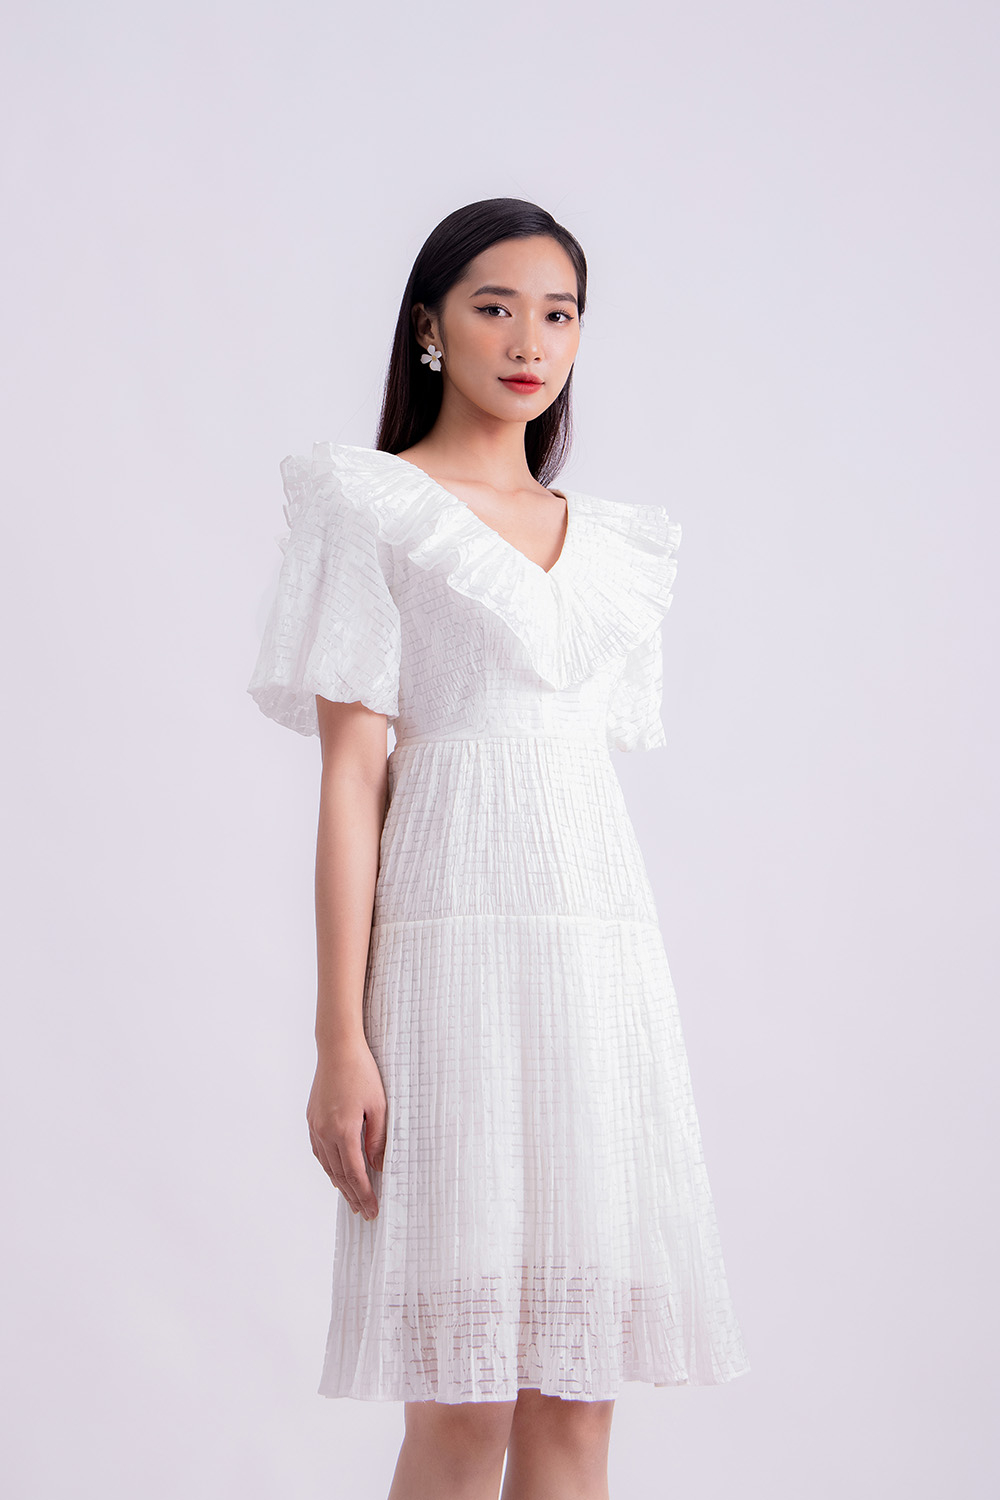 Đầm trắng dáng xòe cổ viền bèo tay phồng KK120-36 | Thời trang ...